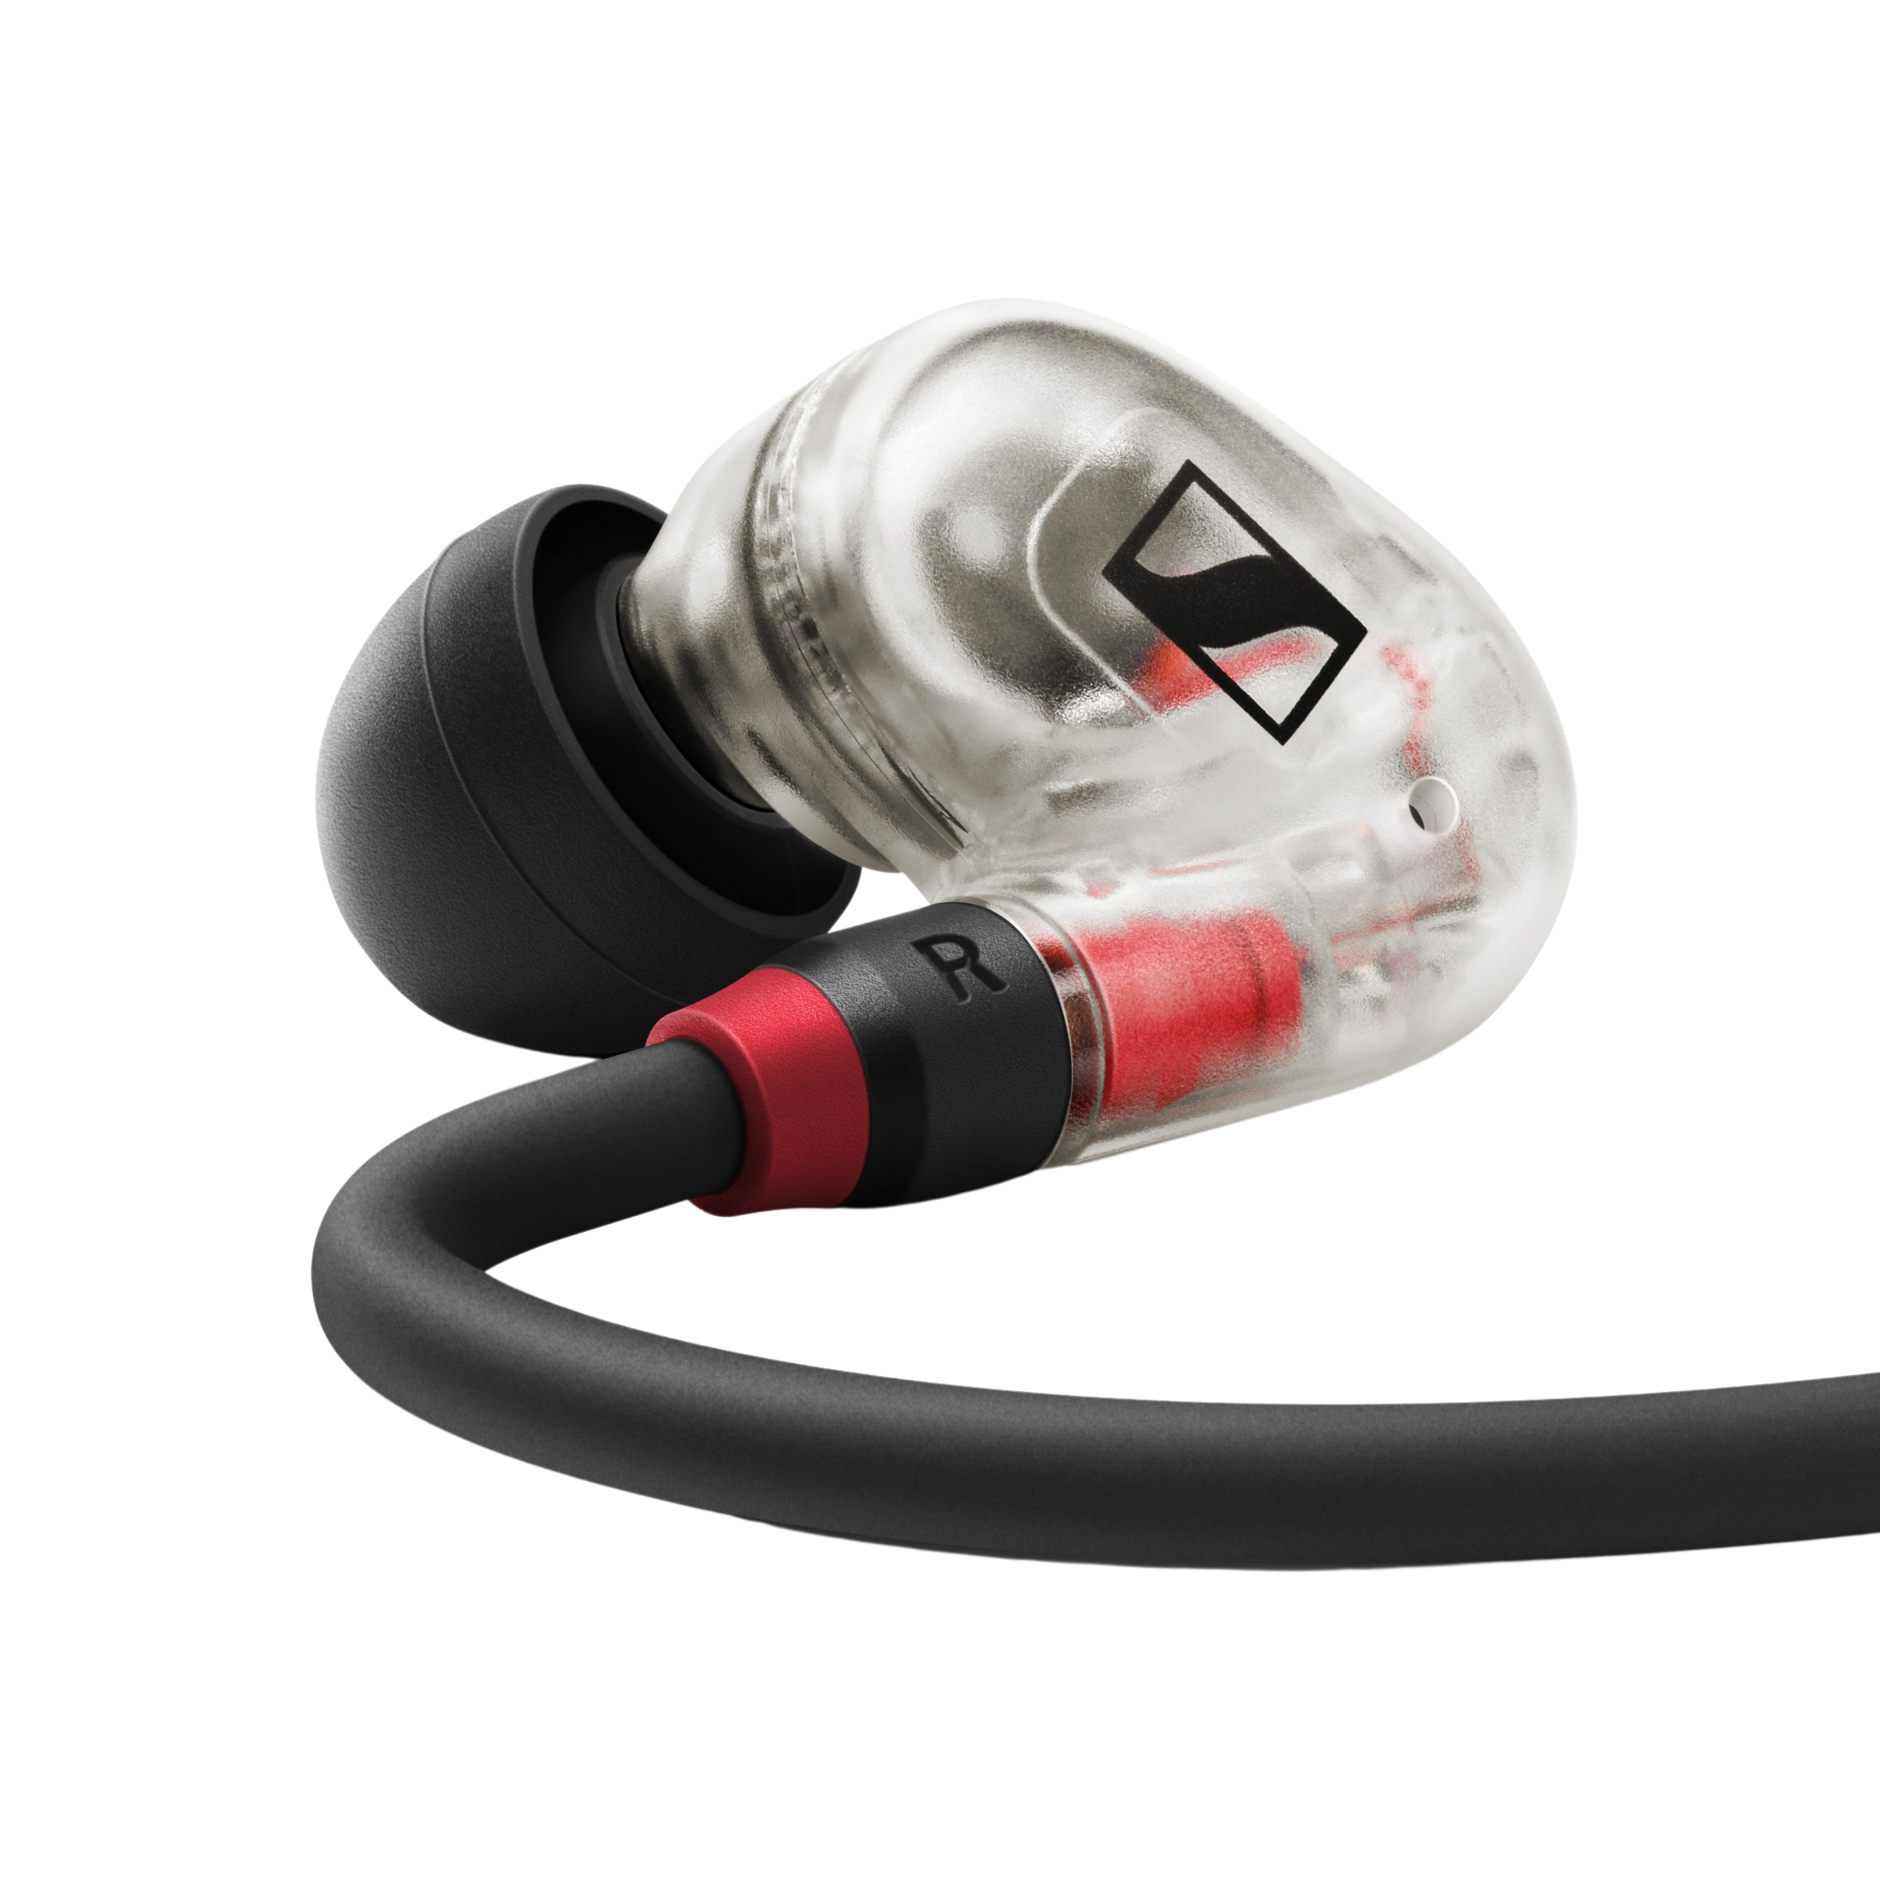 In-ear monitoring IE 100 Pro | Sennheiser - Sennheiser